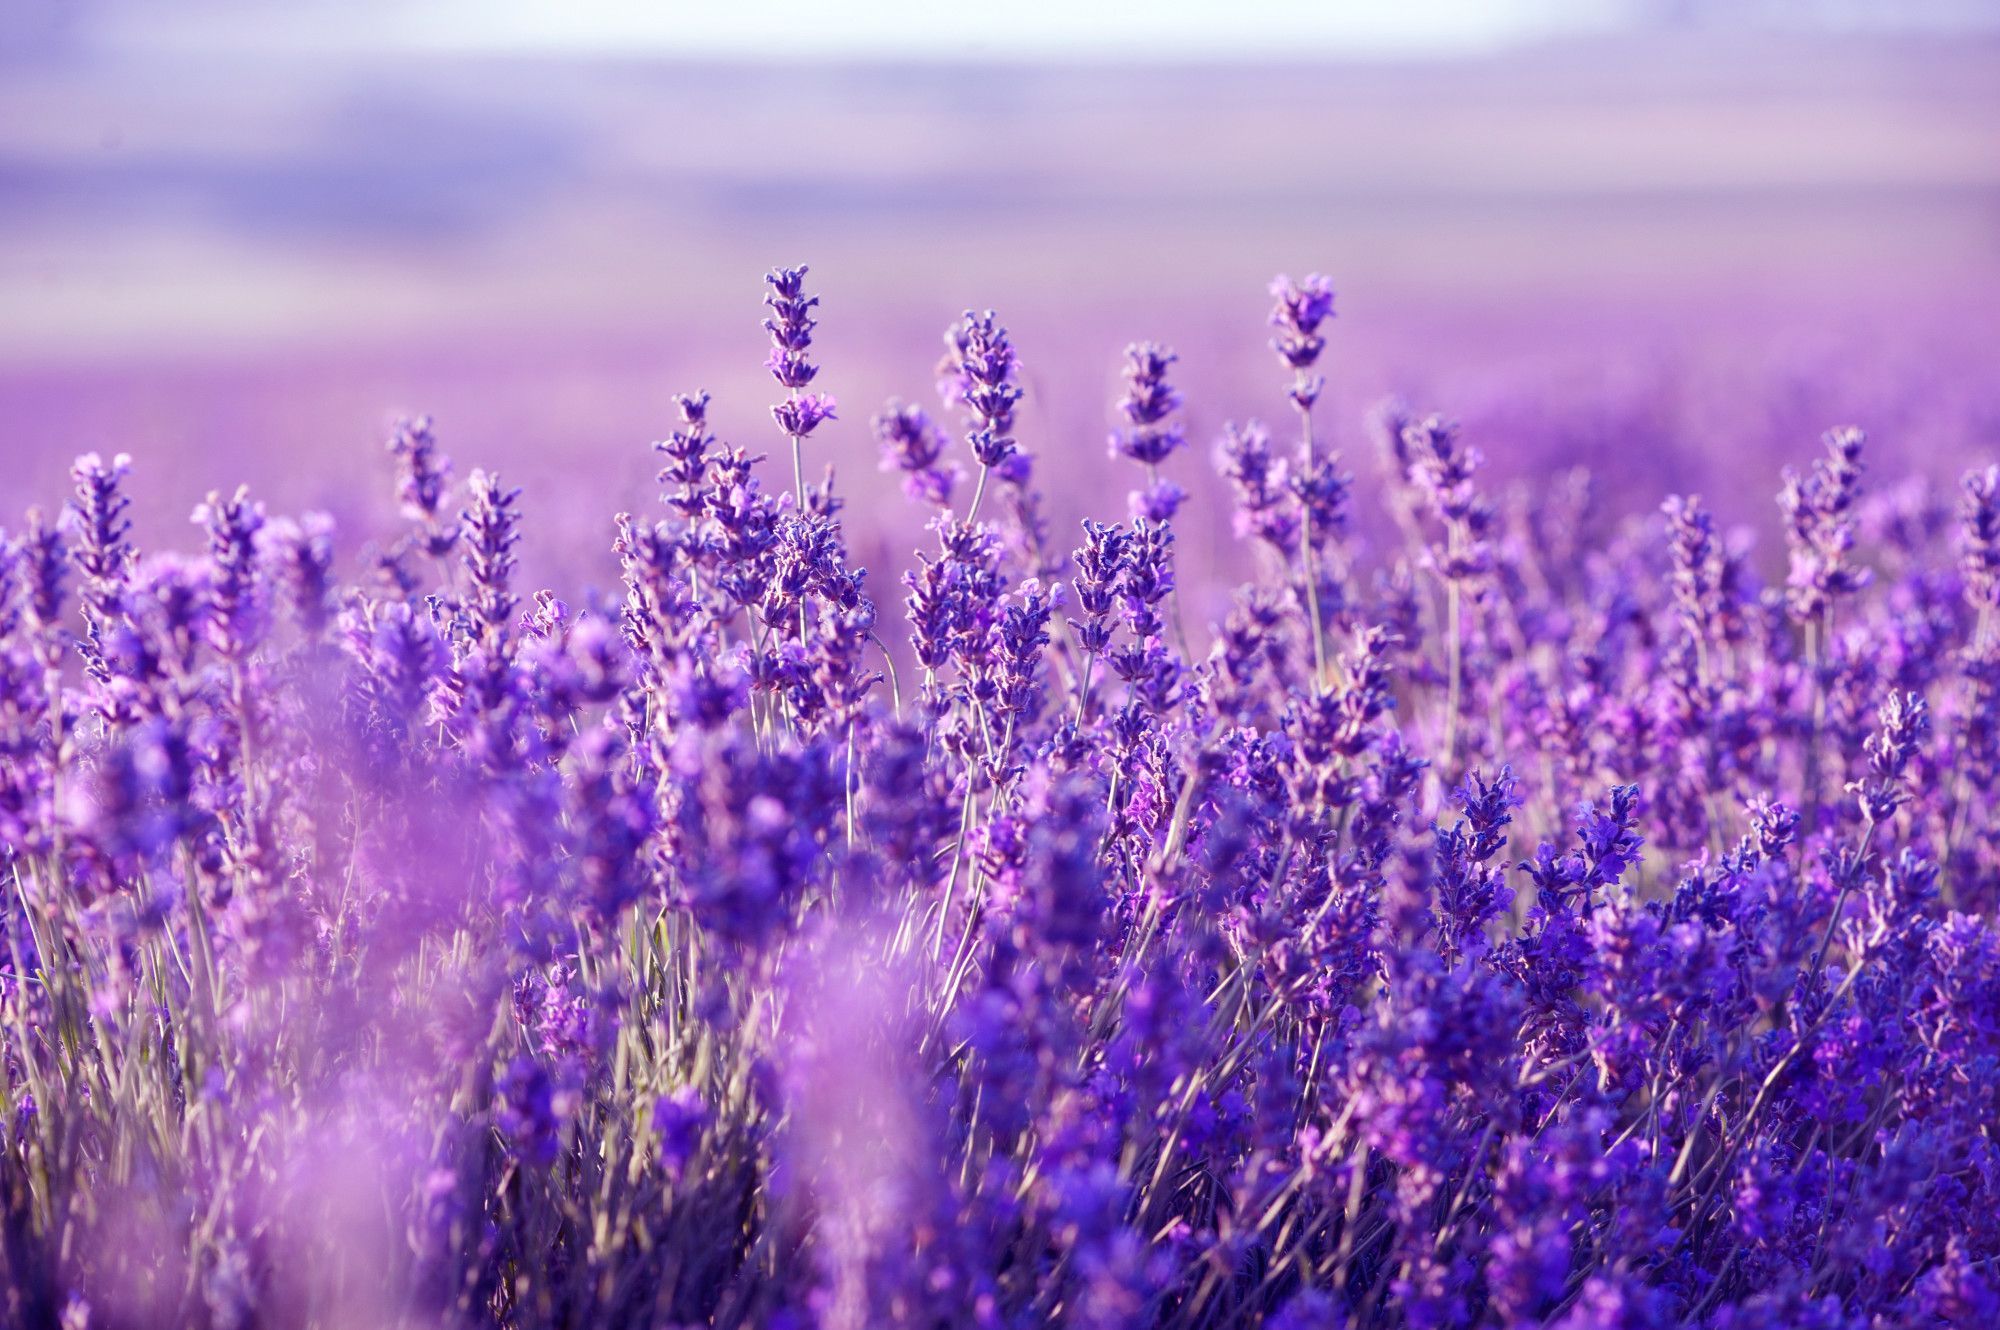 Hình nền lavender đang là xu hướng hot nhất hiện nay với màu sắc nhẹ nhàng, dịu mắt, giúp bạn thư giãn sau những giờ làm việc căng thẳng. Hãy chọn ngay hình nền lavender để tạo sự mới mẻ cho màn hình điện thoại của mình nhé!